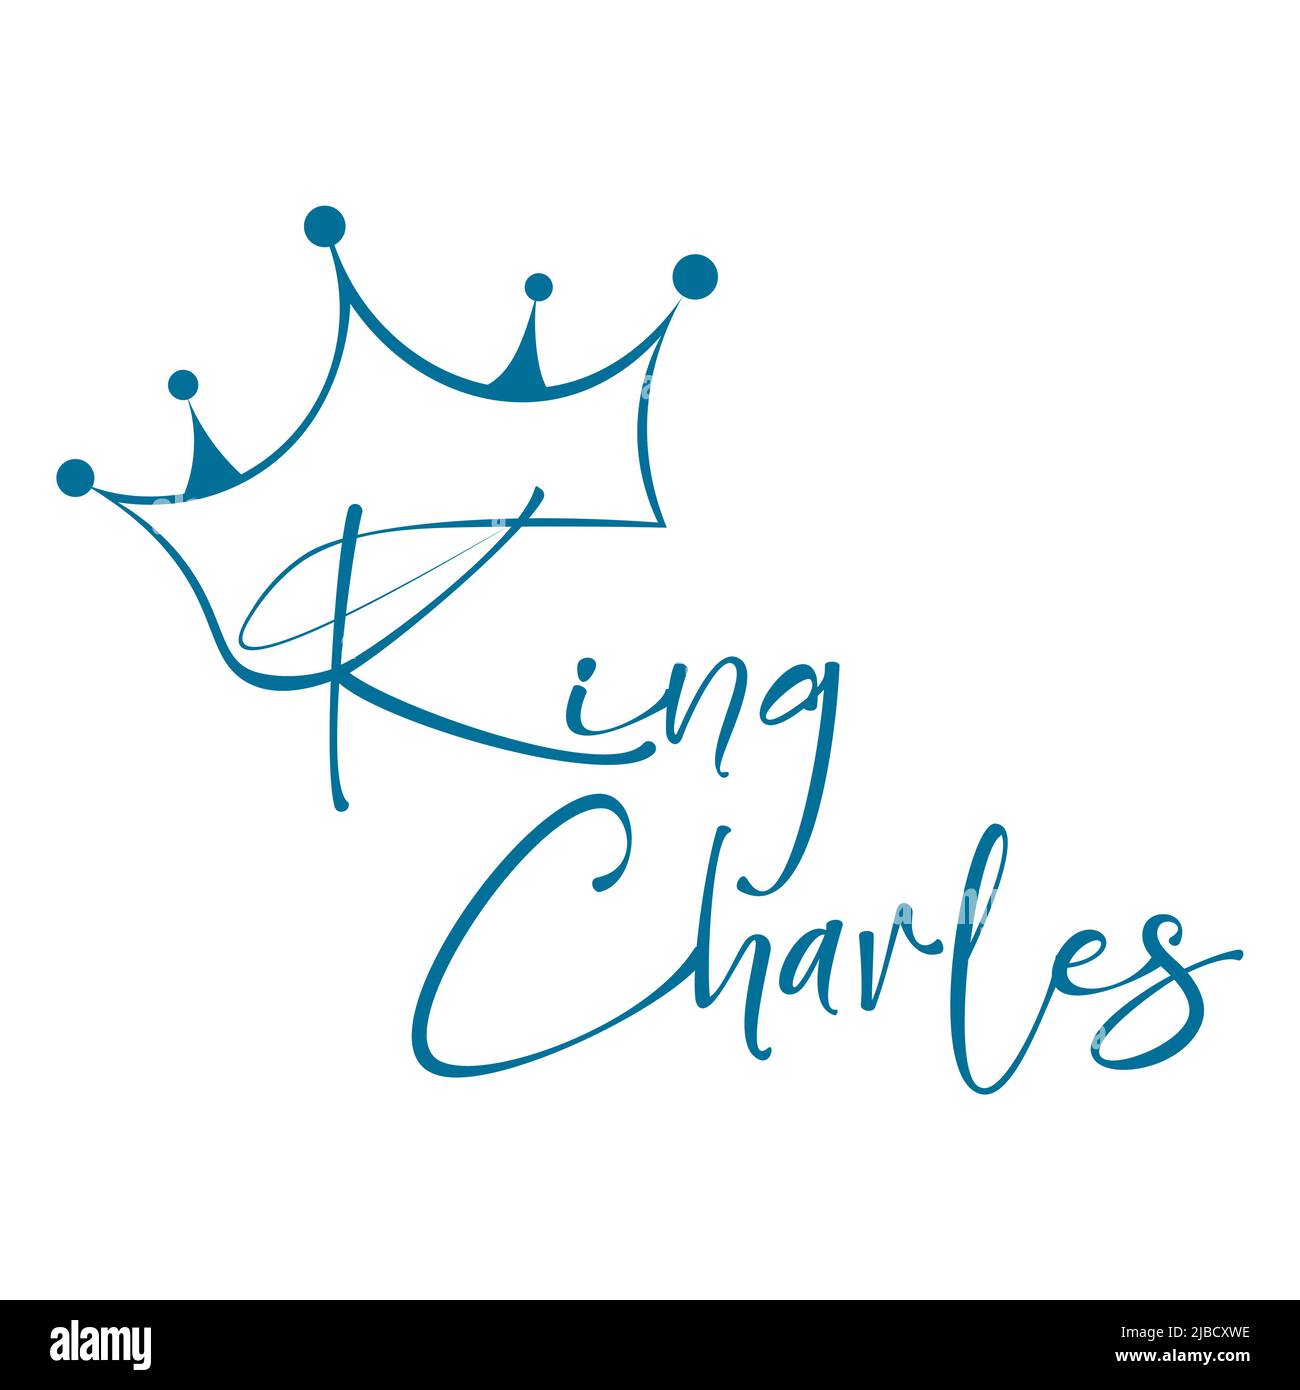 King Charles III Coronation - Prince Charles of Wales becomes King of England Stock Vector